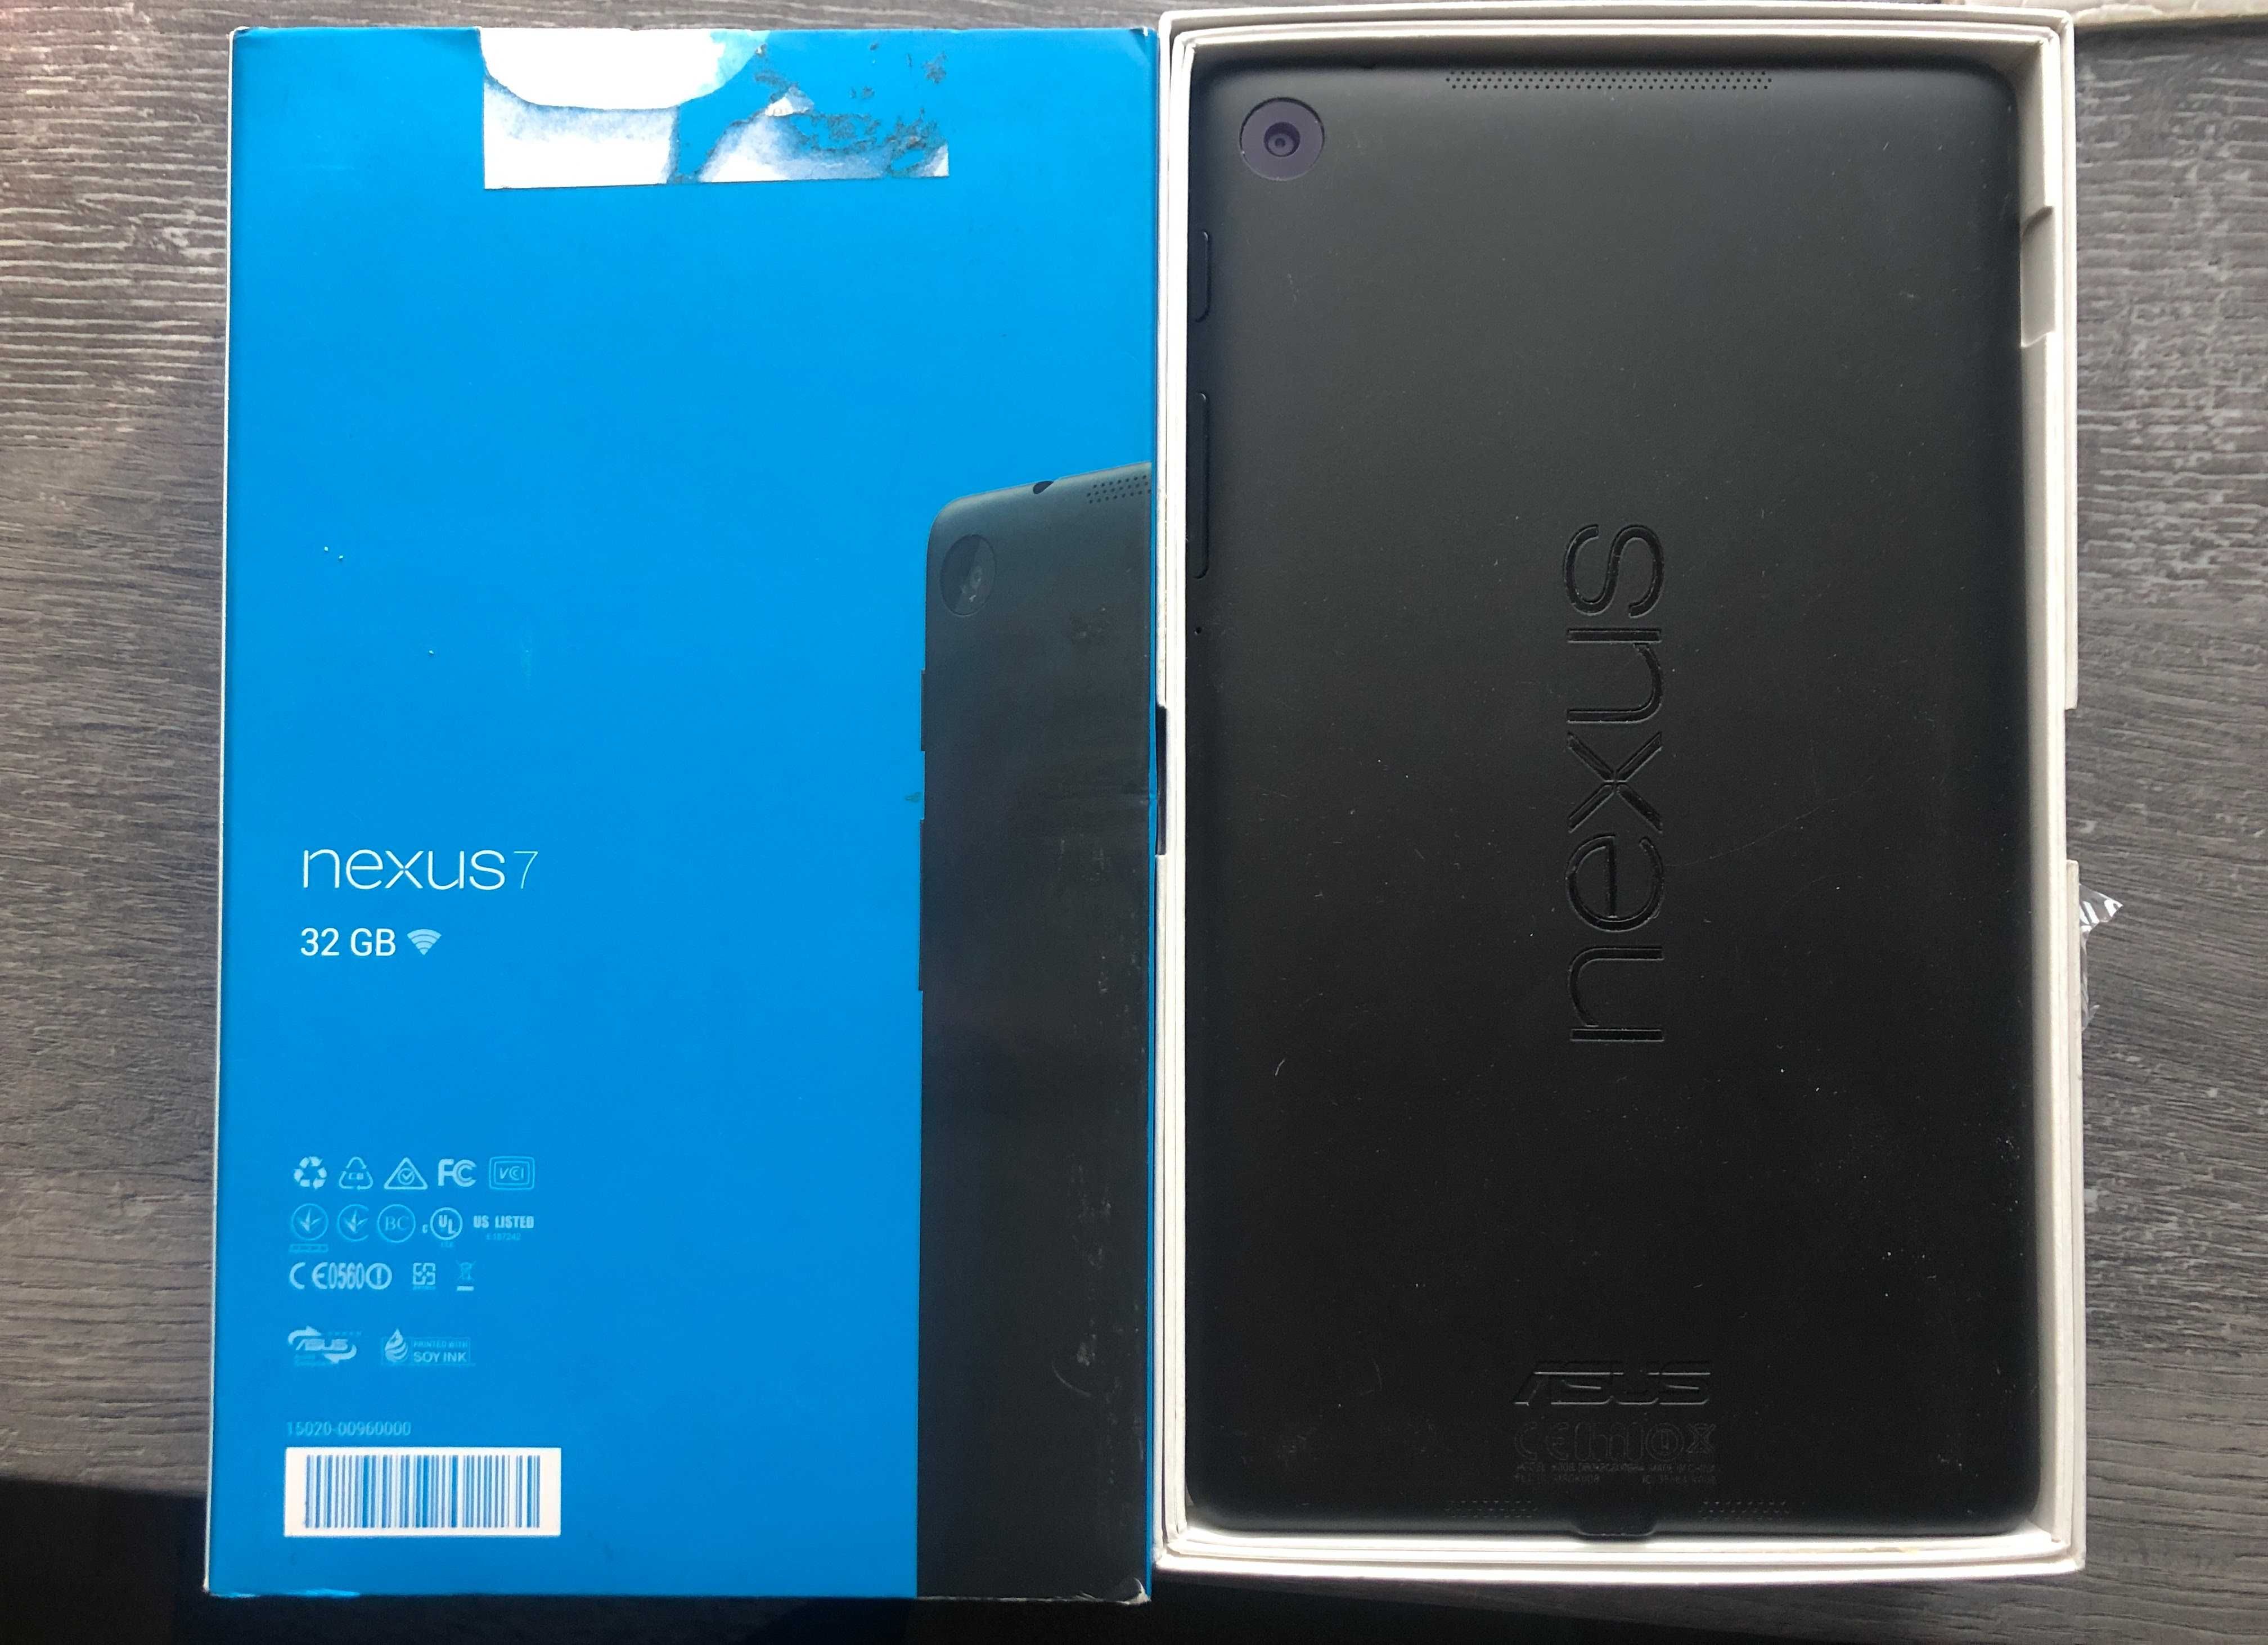 Tablet ASUS nexus 7 32 GB